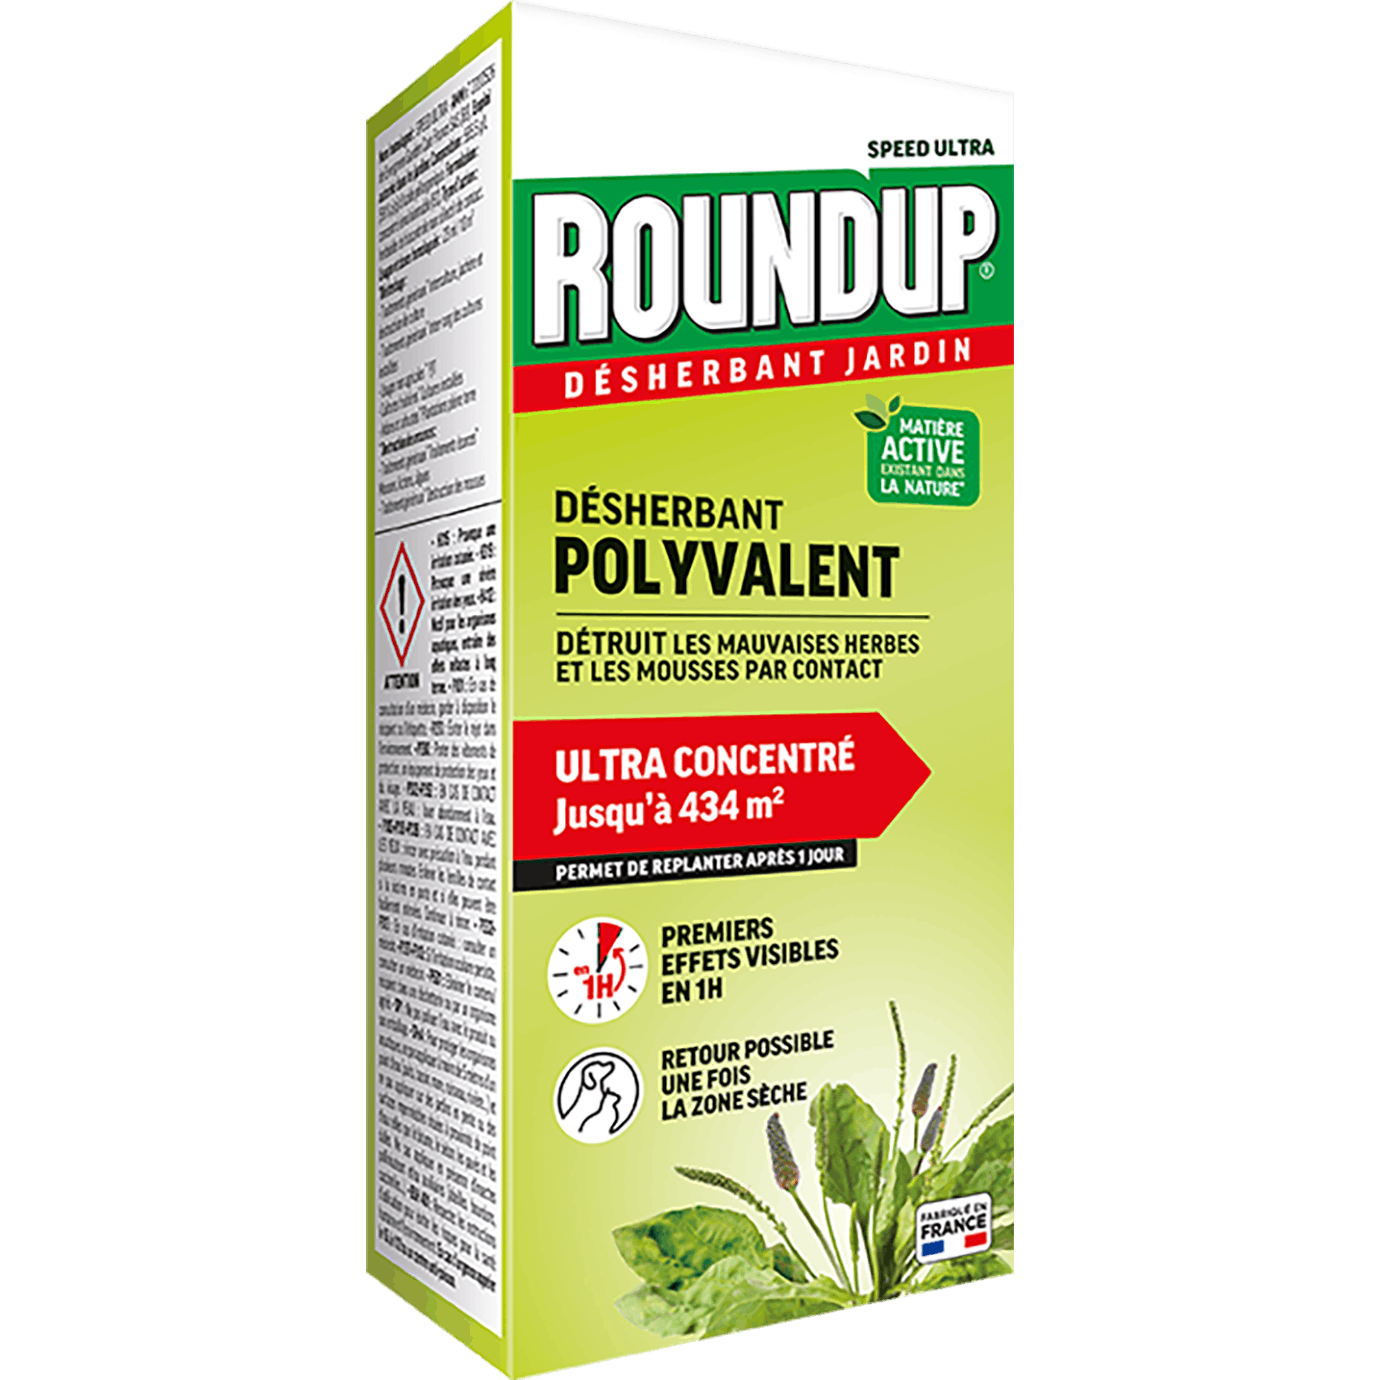 Roundup Rapid Concentré pour allées 990 ml